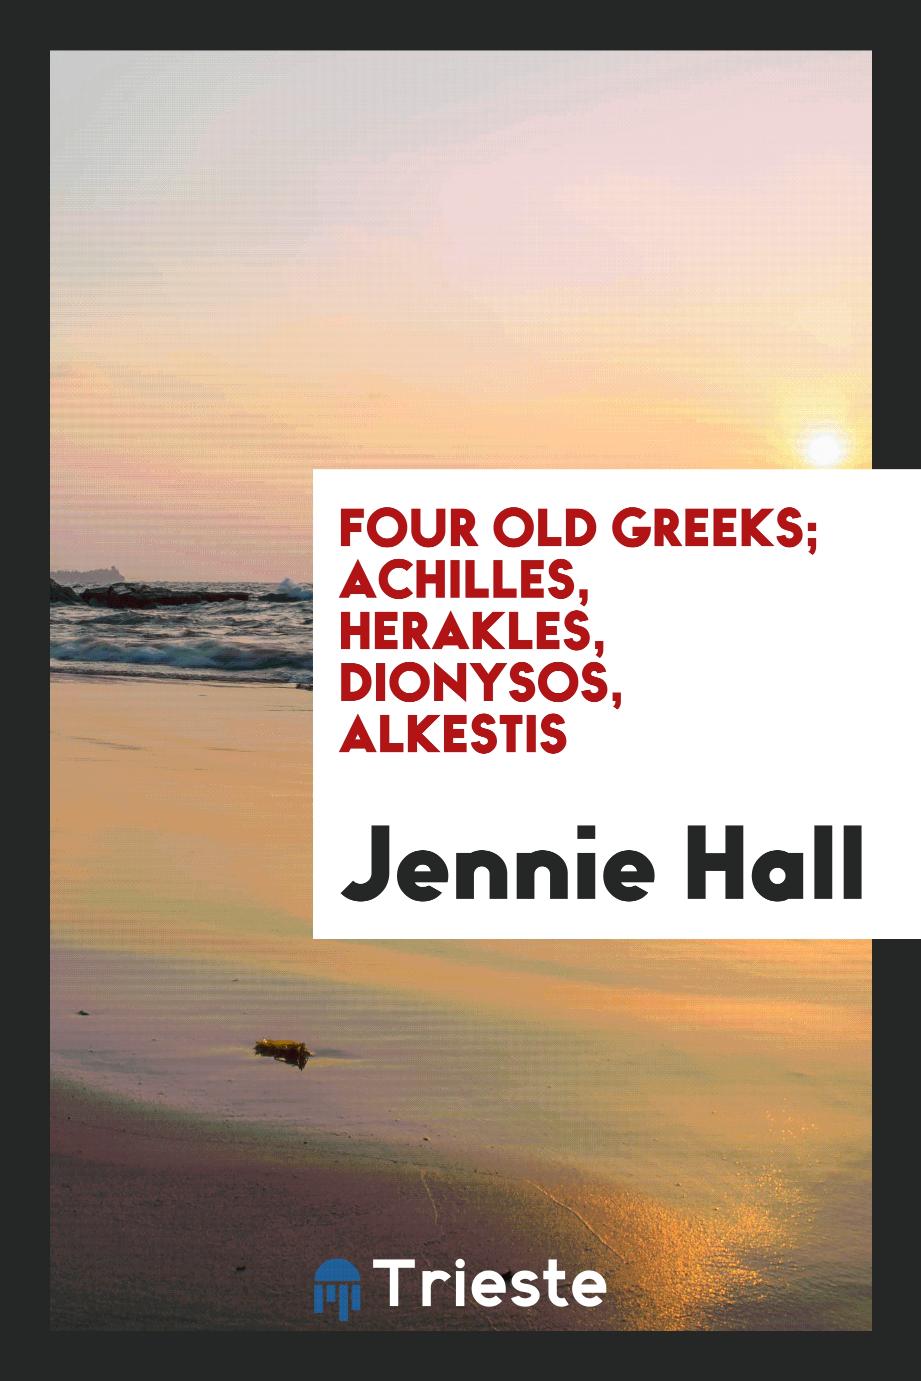 Four old Greeks; Achilles, Herakles, Dionysos, Alkestis